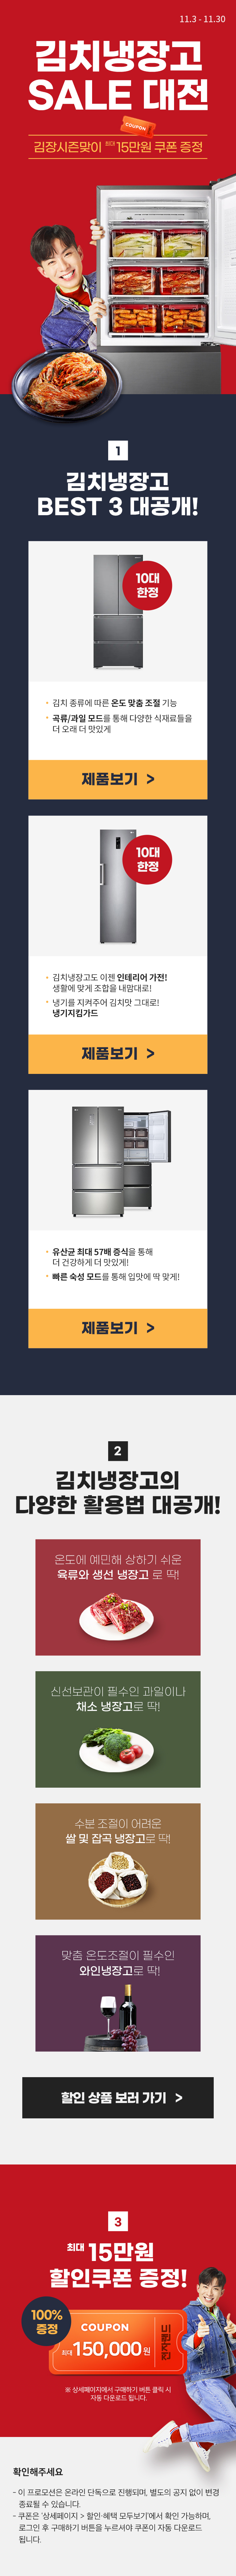 김치냉장고 세일대전 - 김장시즌맞이 최대 15만원 쿠폰 증정